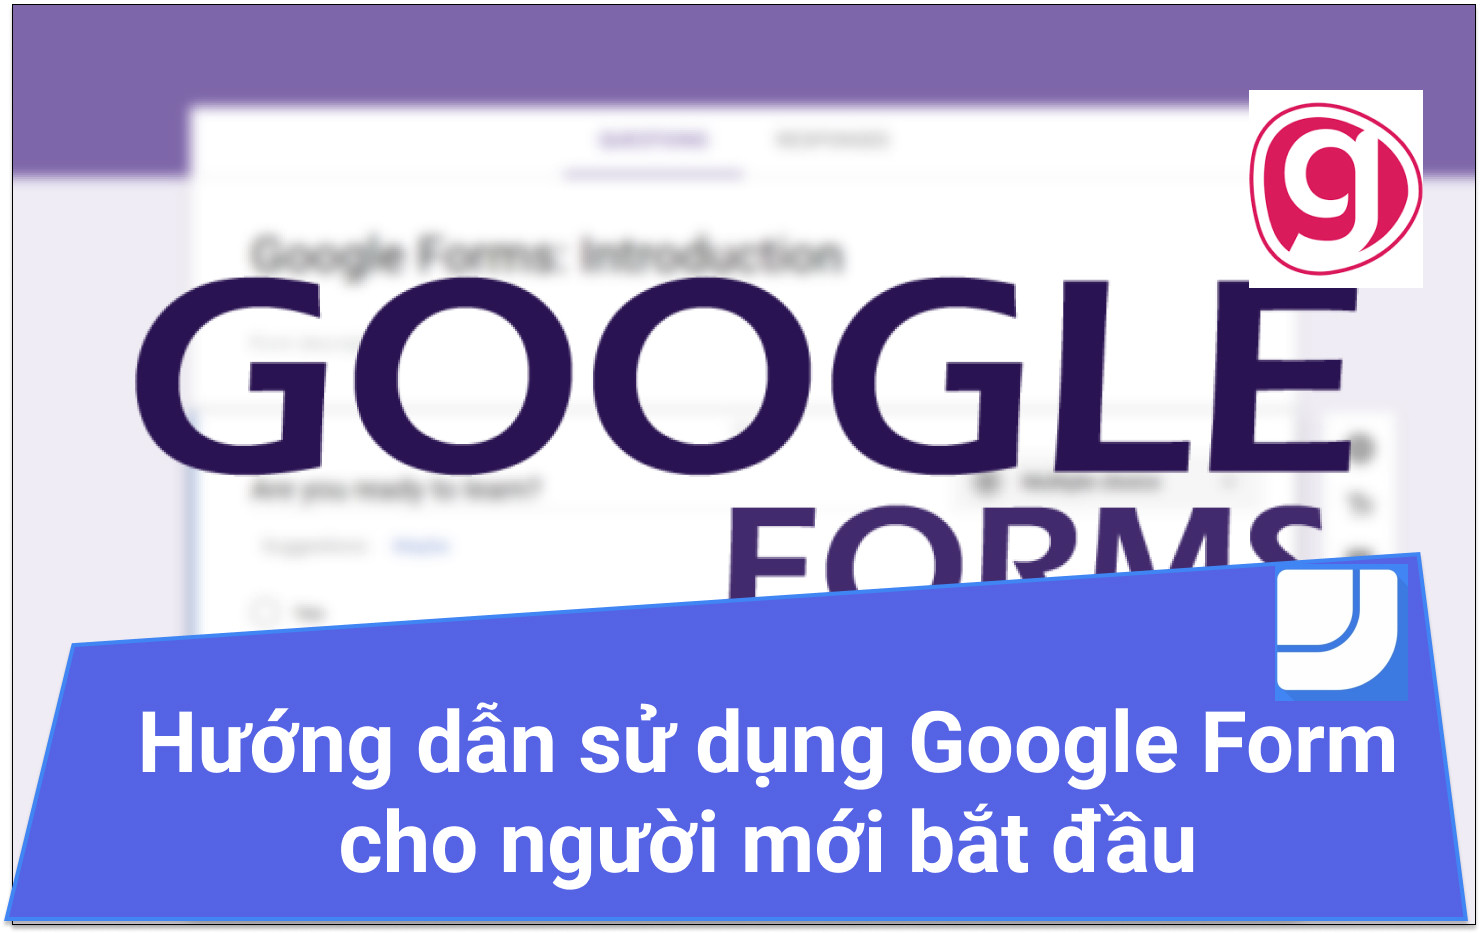 Hướng dẫn cách tạo Google Form cho người mới bắt đầu